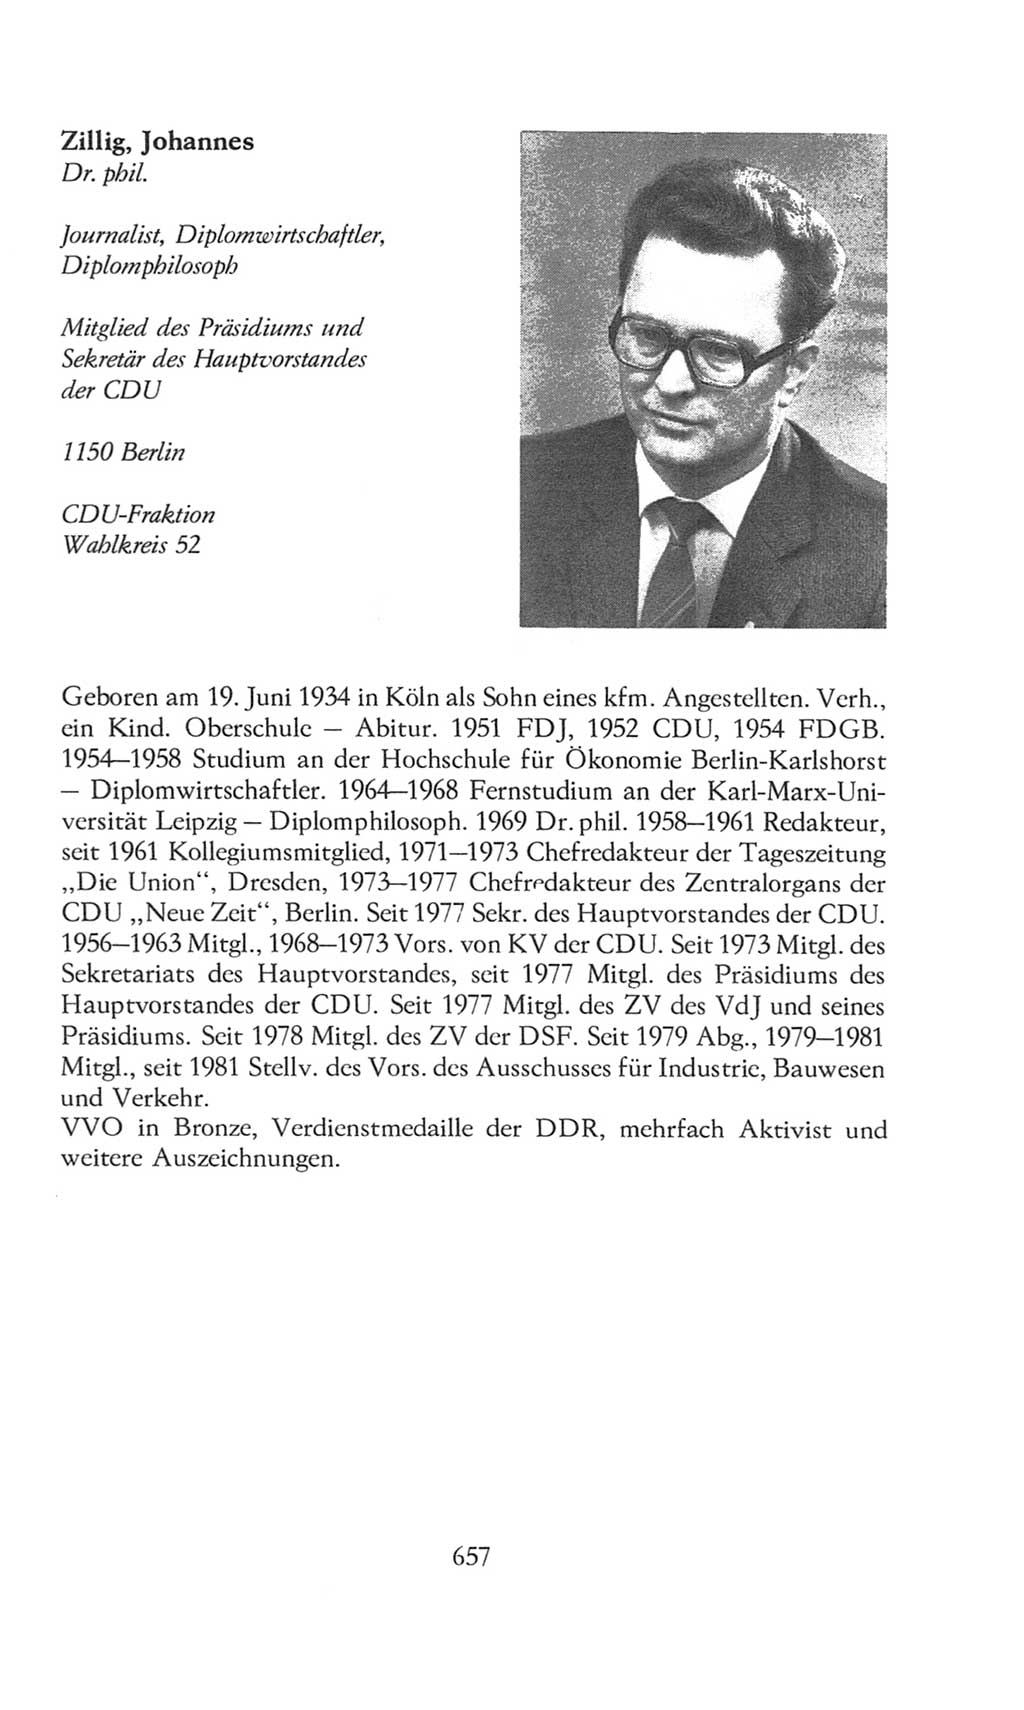 Volkskammer (VK) der Deutschen Demokratischen Republik (DDR), 8. Wahlperiode 1981-1986, Seite 657 (VK. DDR 8. WP. 1981-1986, S. 657)